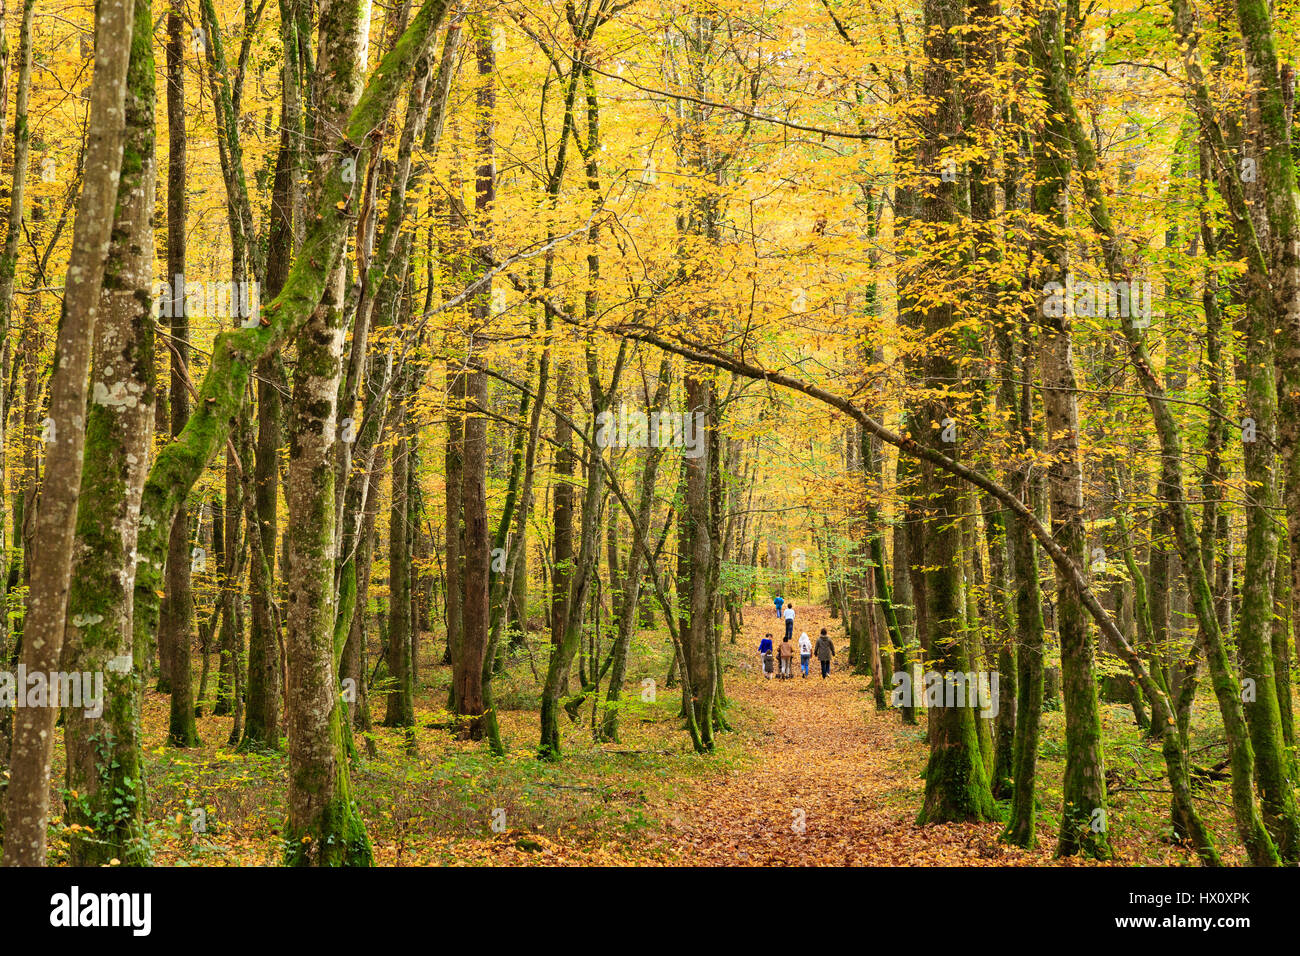 France, Allier, Tronçais forest, Saint Bonnet Troncais, family walk fall Stock Photo